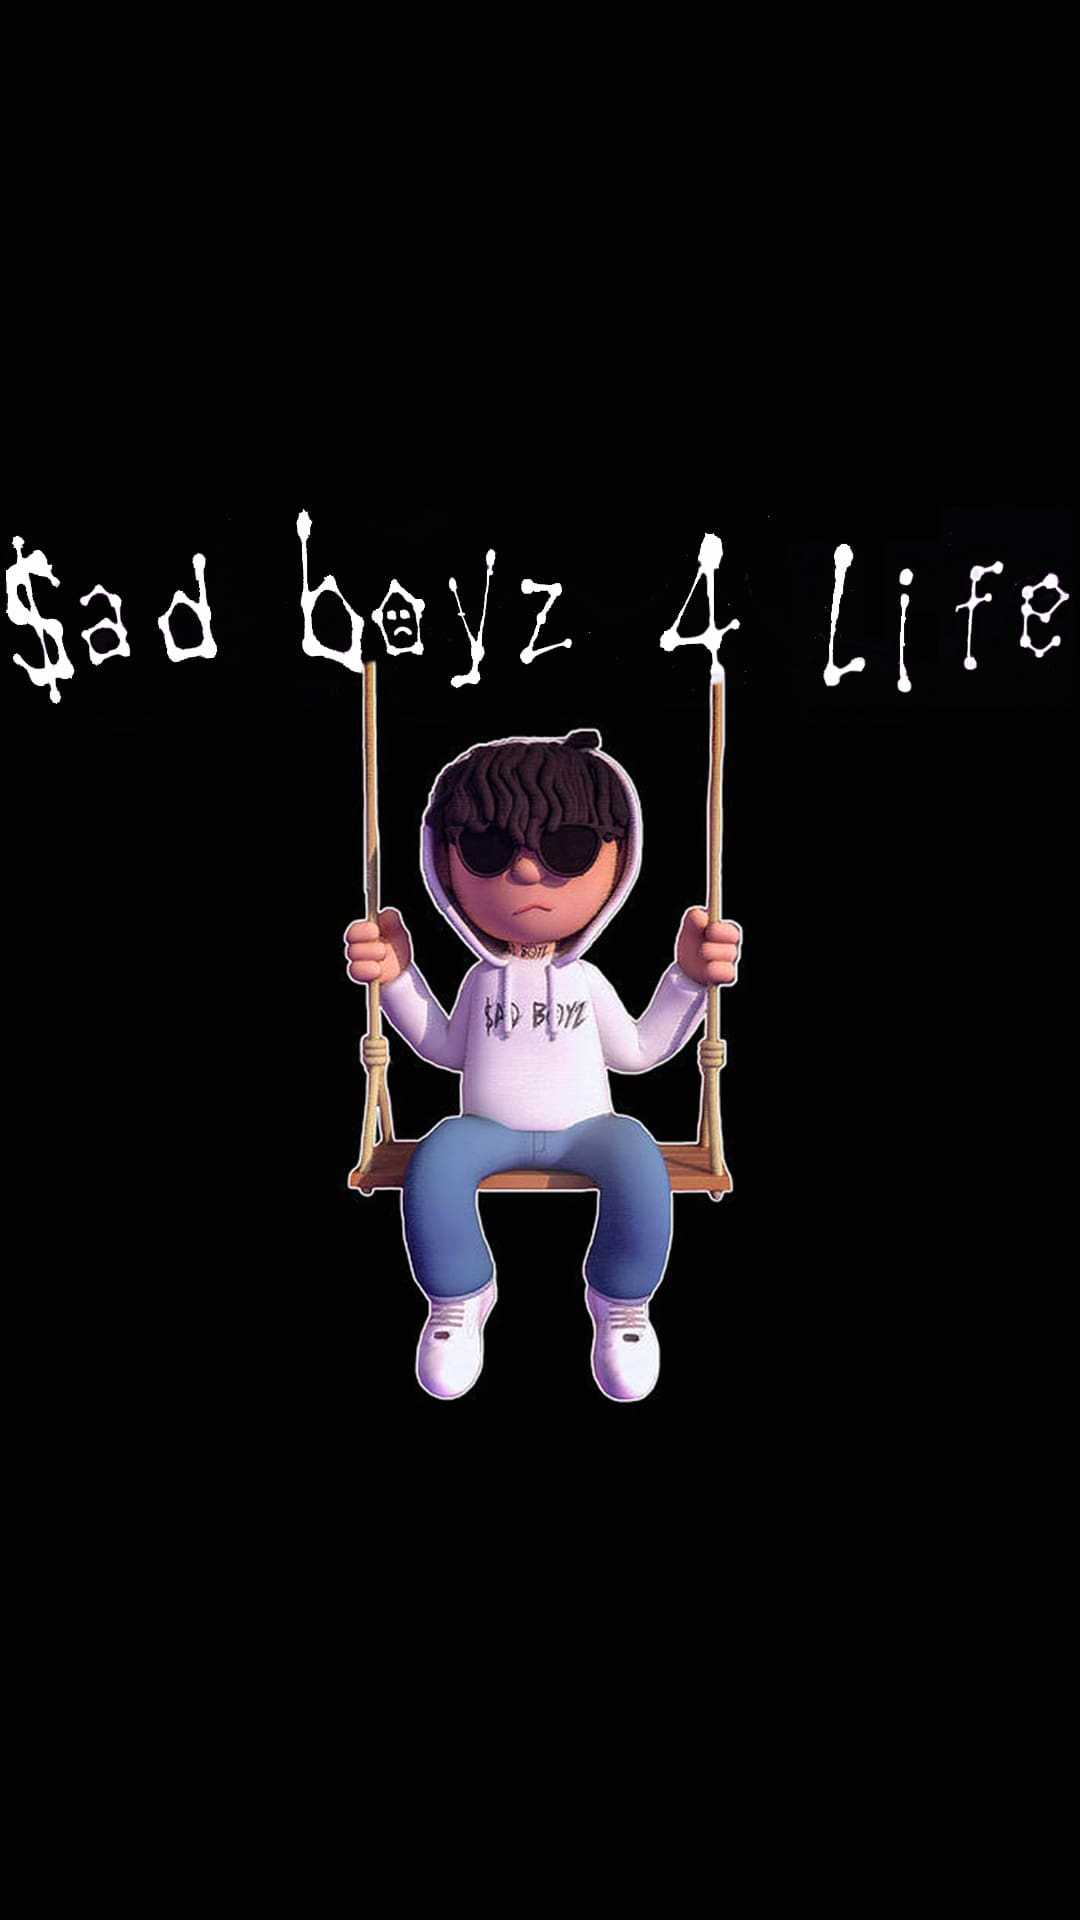 Sad Boyz 4 Life 2 Wallpaper iXpap